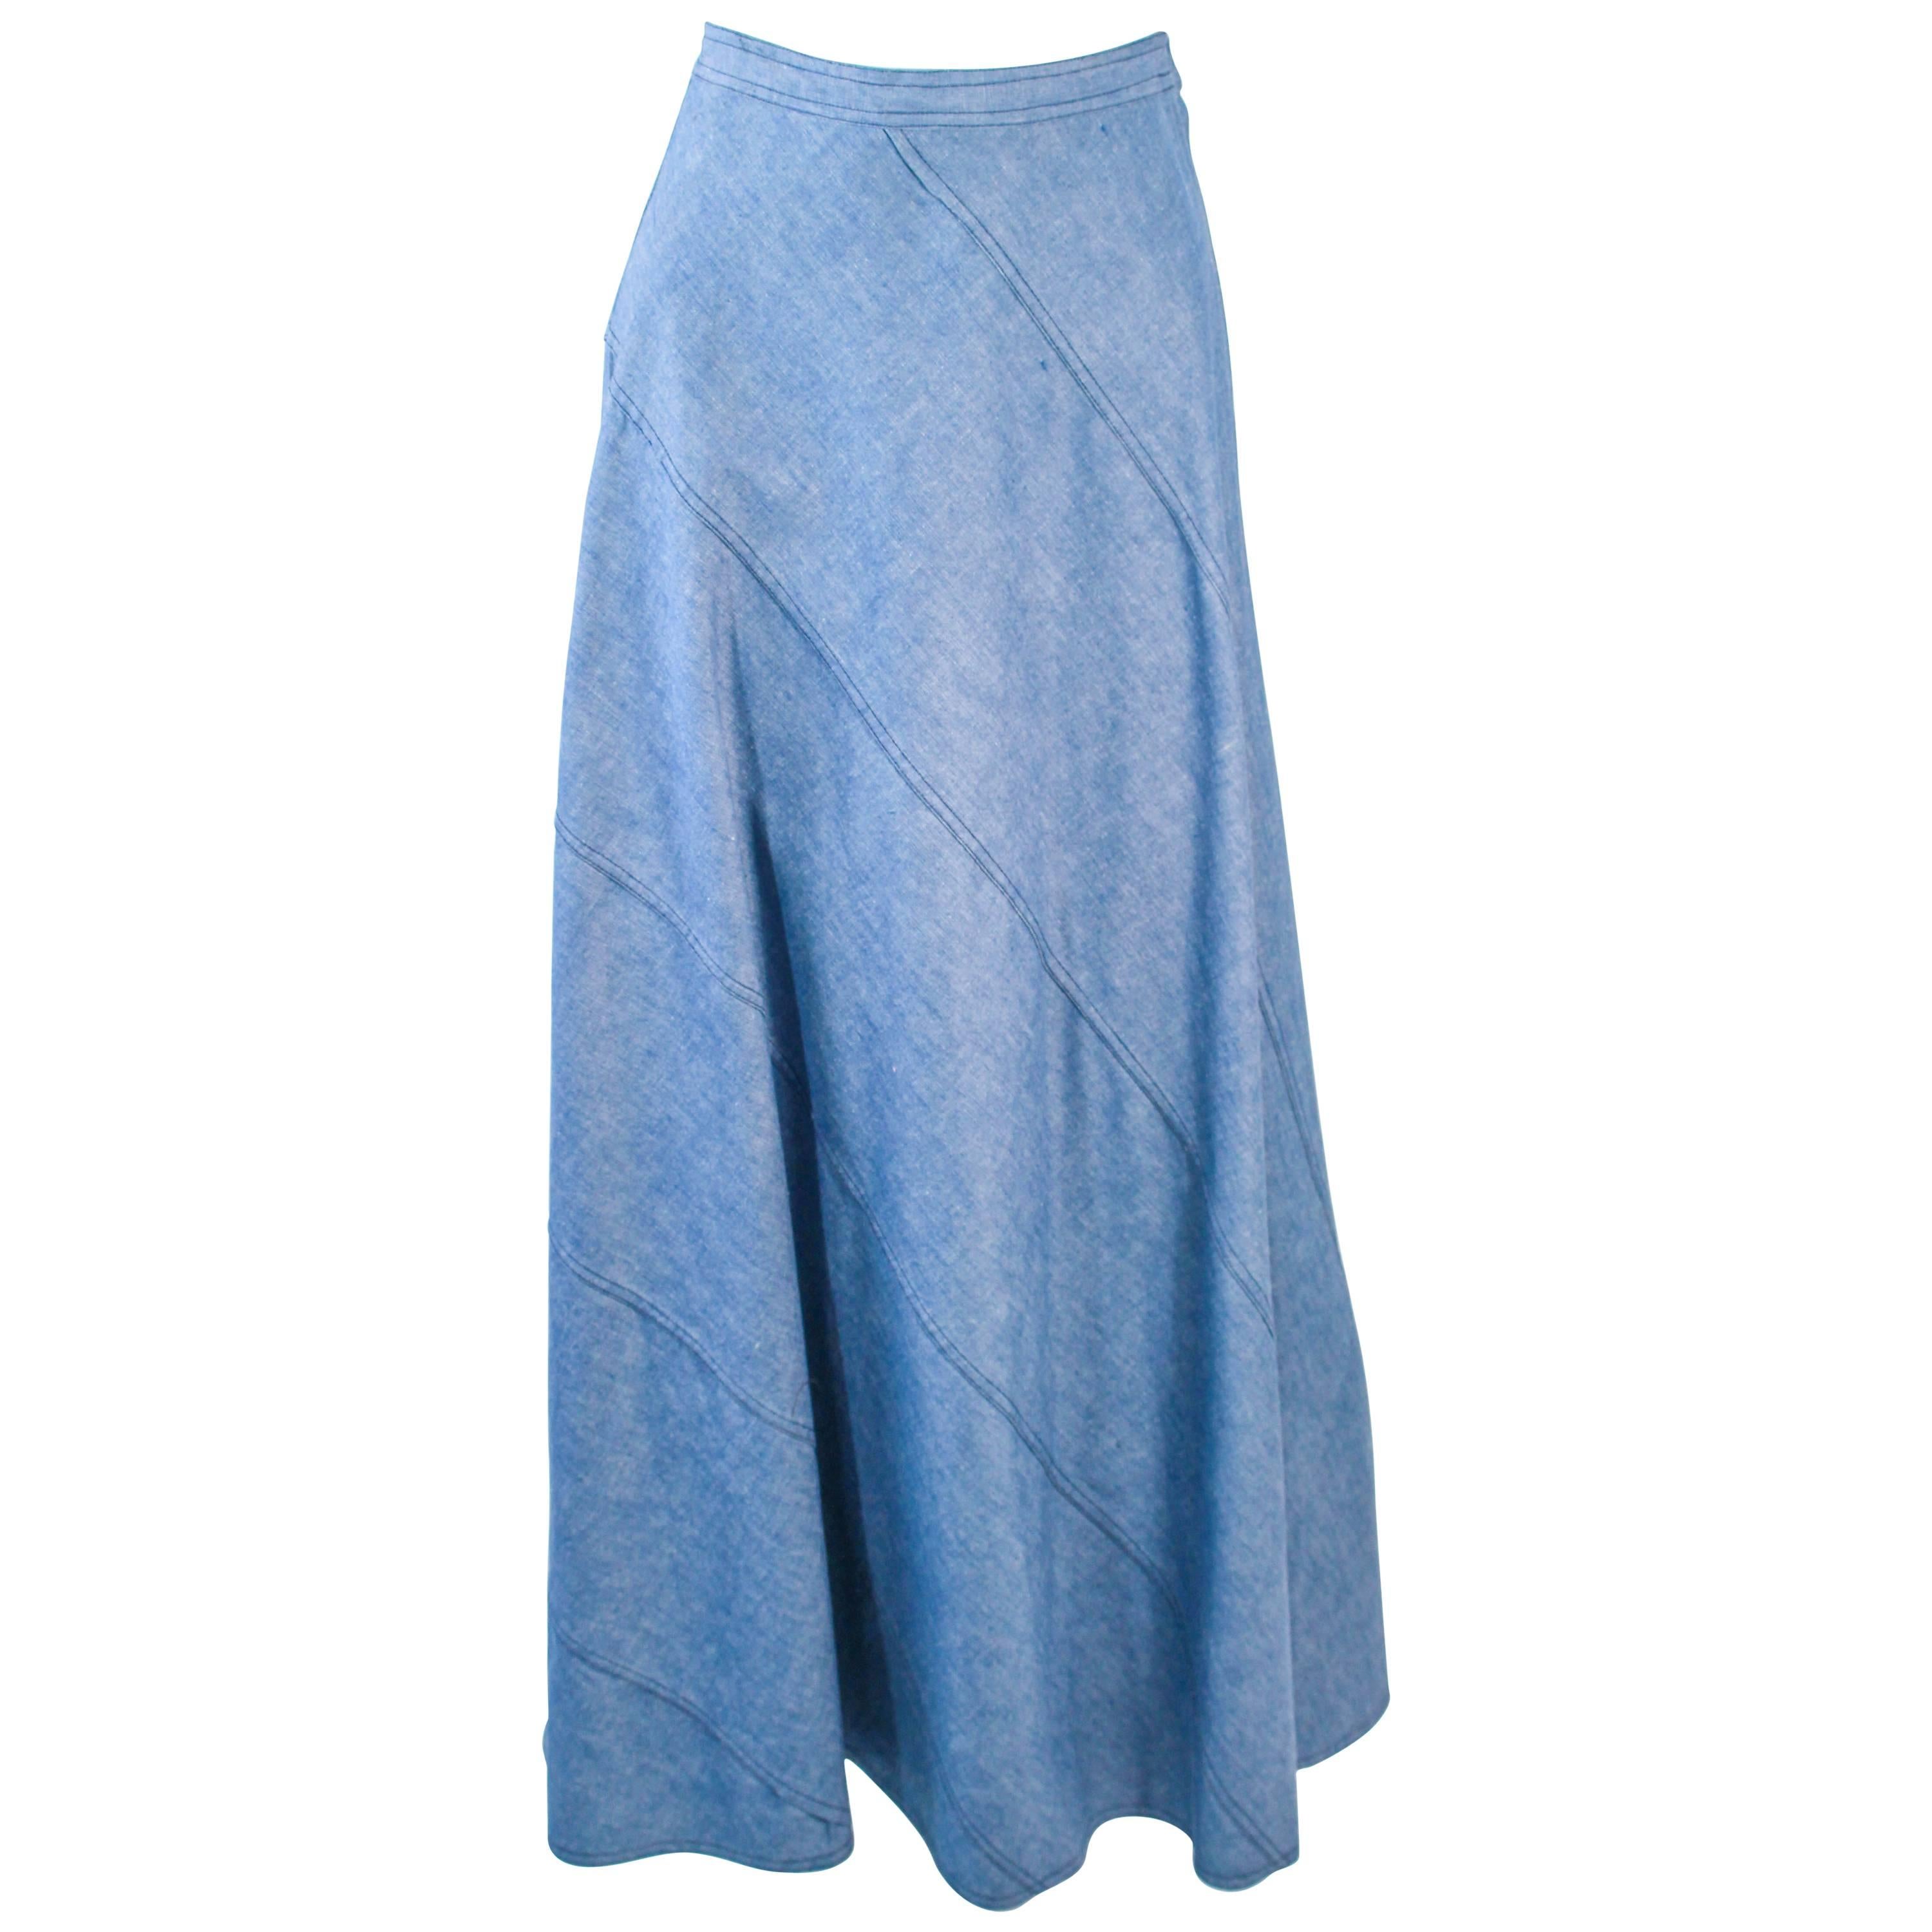 Vintage Skirt   Cream Skirt  Inverted Pleat Skirt  A line Skirt  70s Skirt   Waist 28